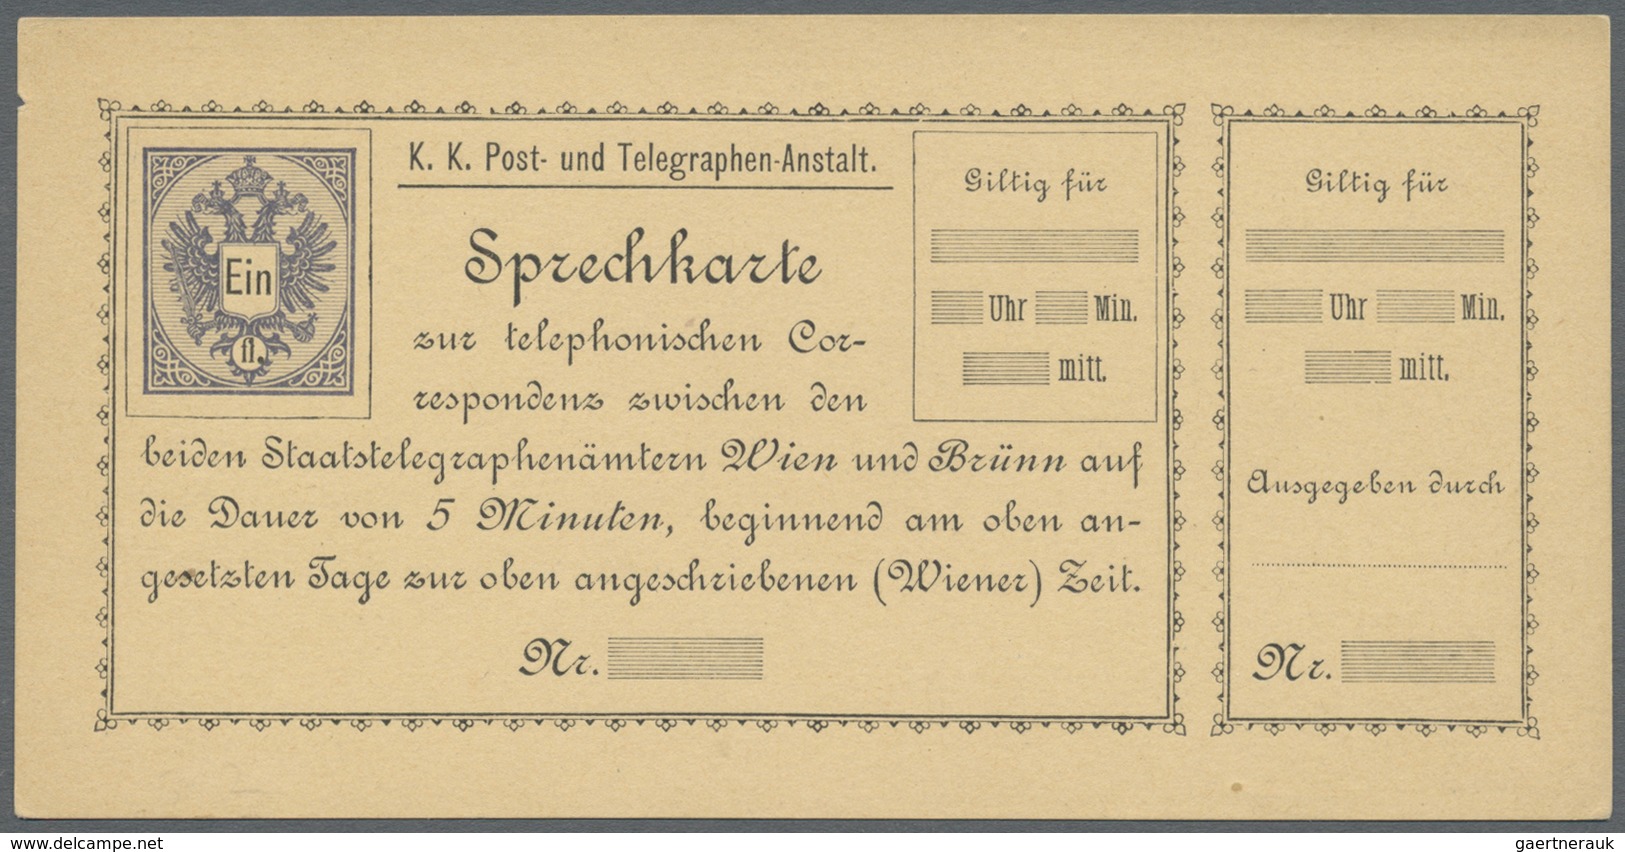 GA Österreich - Telefonsprechkarten: 1886-1900: Sammlung von 11 UNGEBRAUCHTEN, frühen Telefonsprechkart